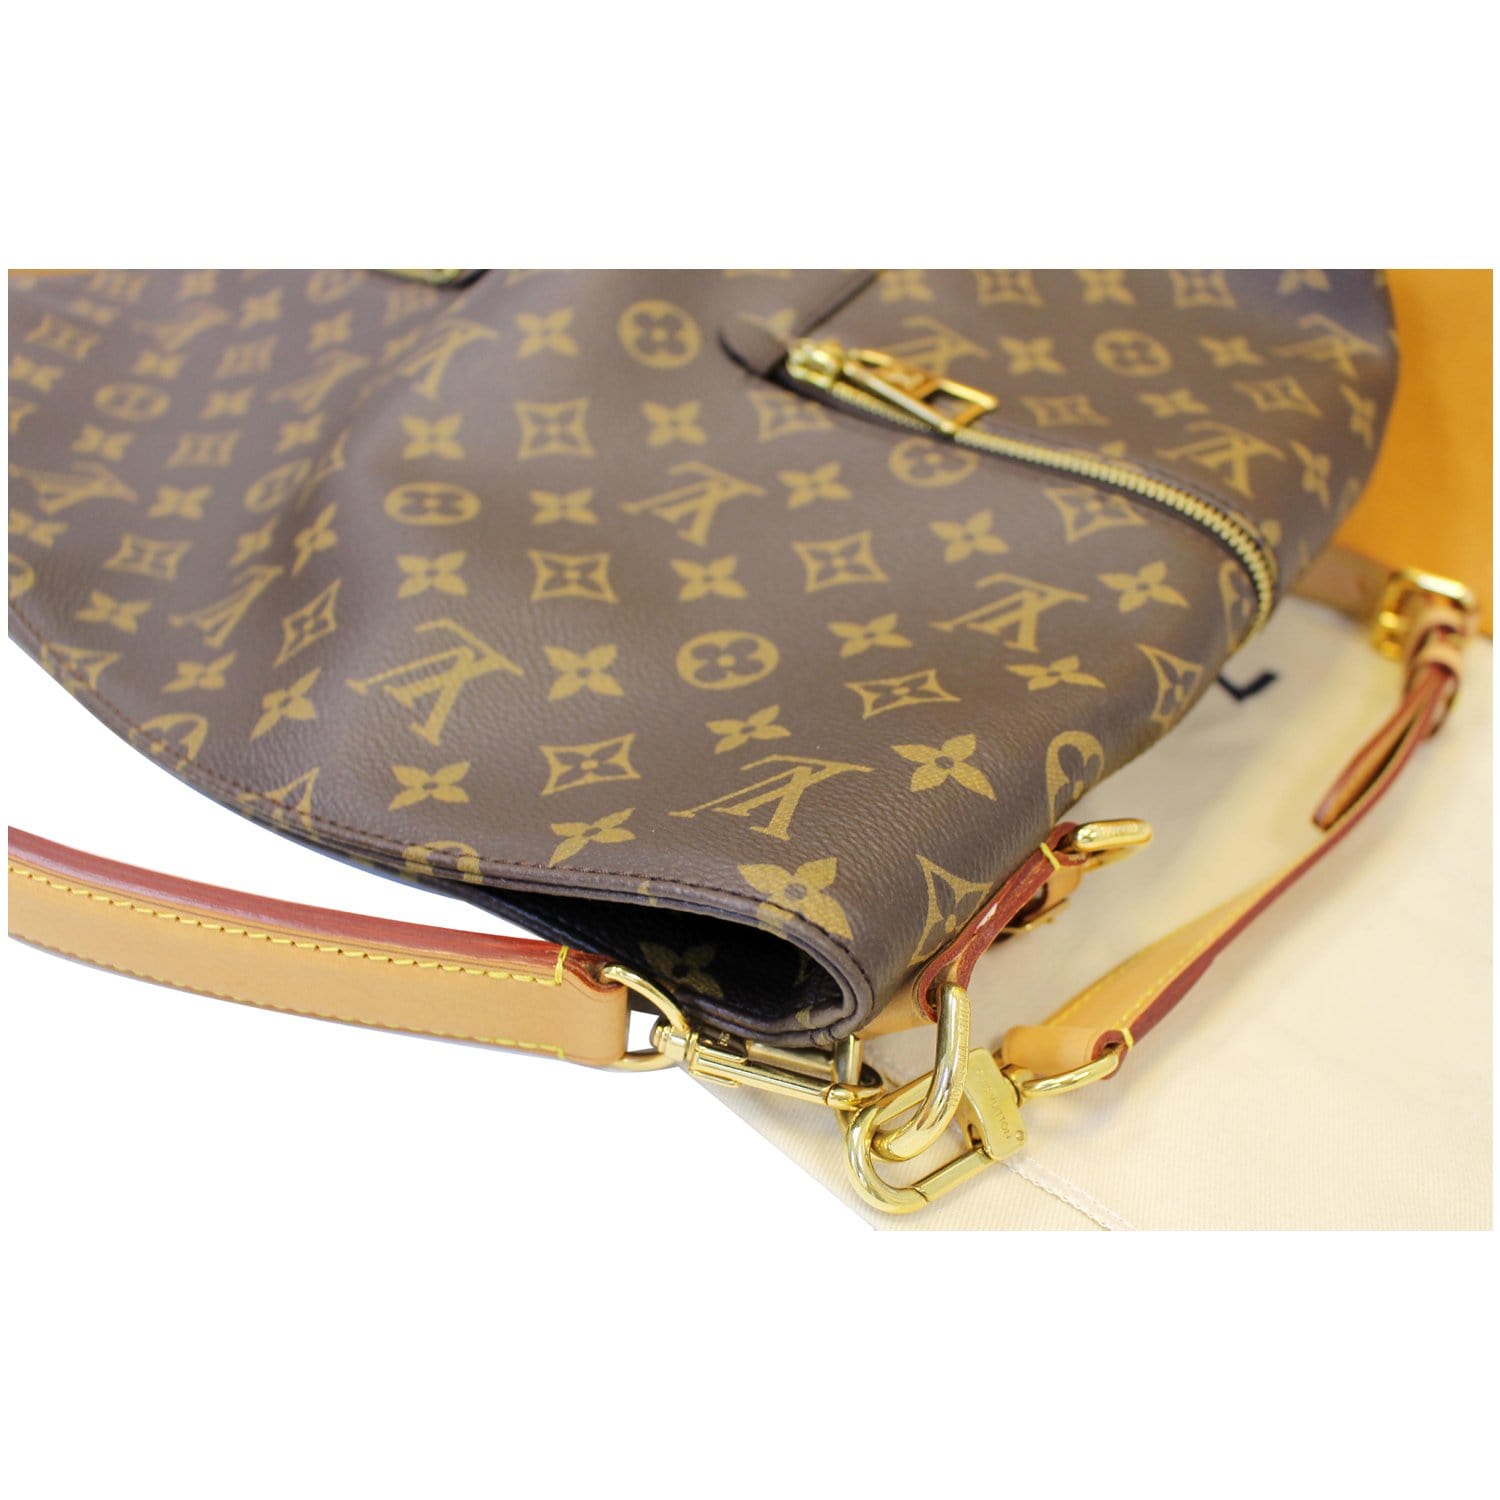 Louis Vuitton, Bags, Lv Melie Bag